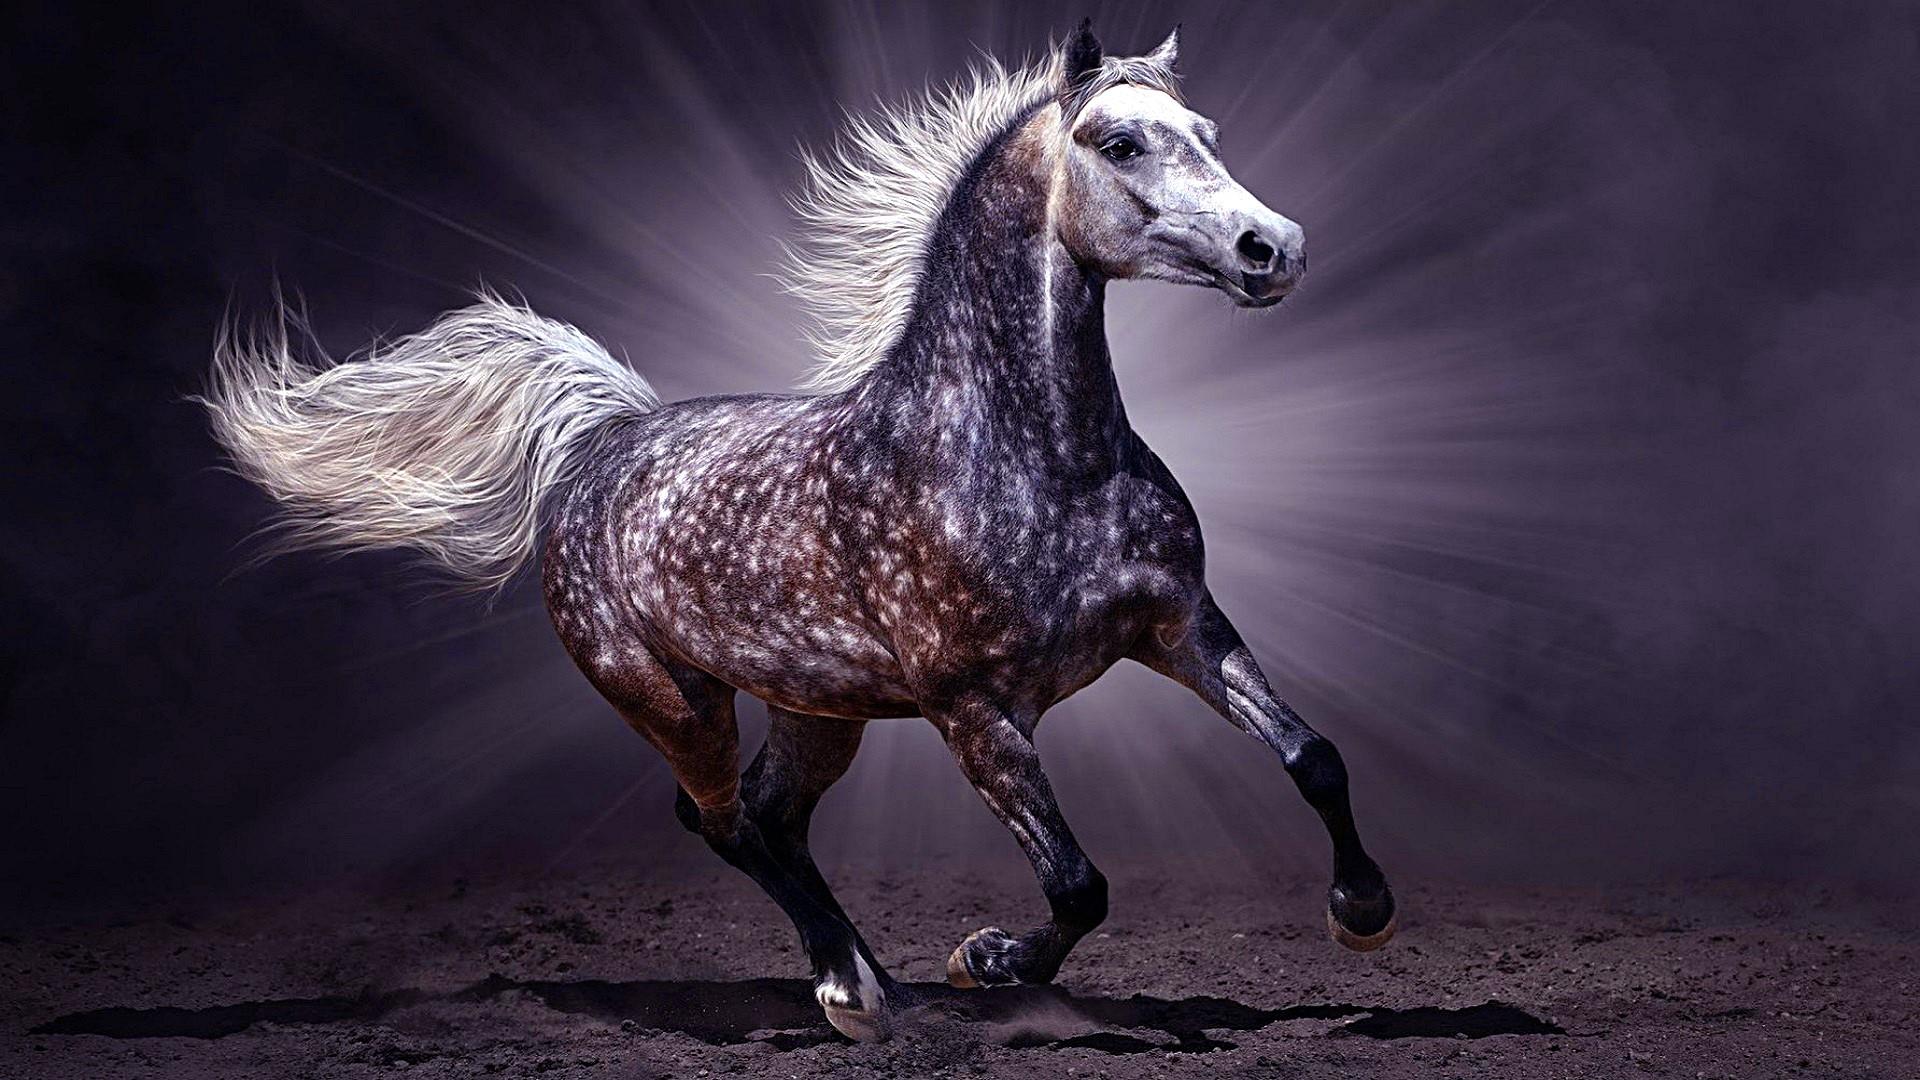 Landscape Portrait - Arabian Horse Wallpaper Hd , HD Wallpaper & Backgrounds